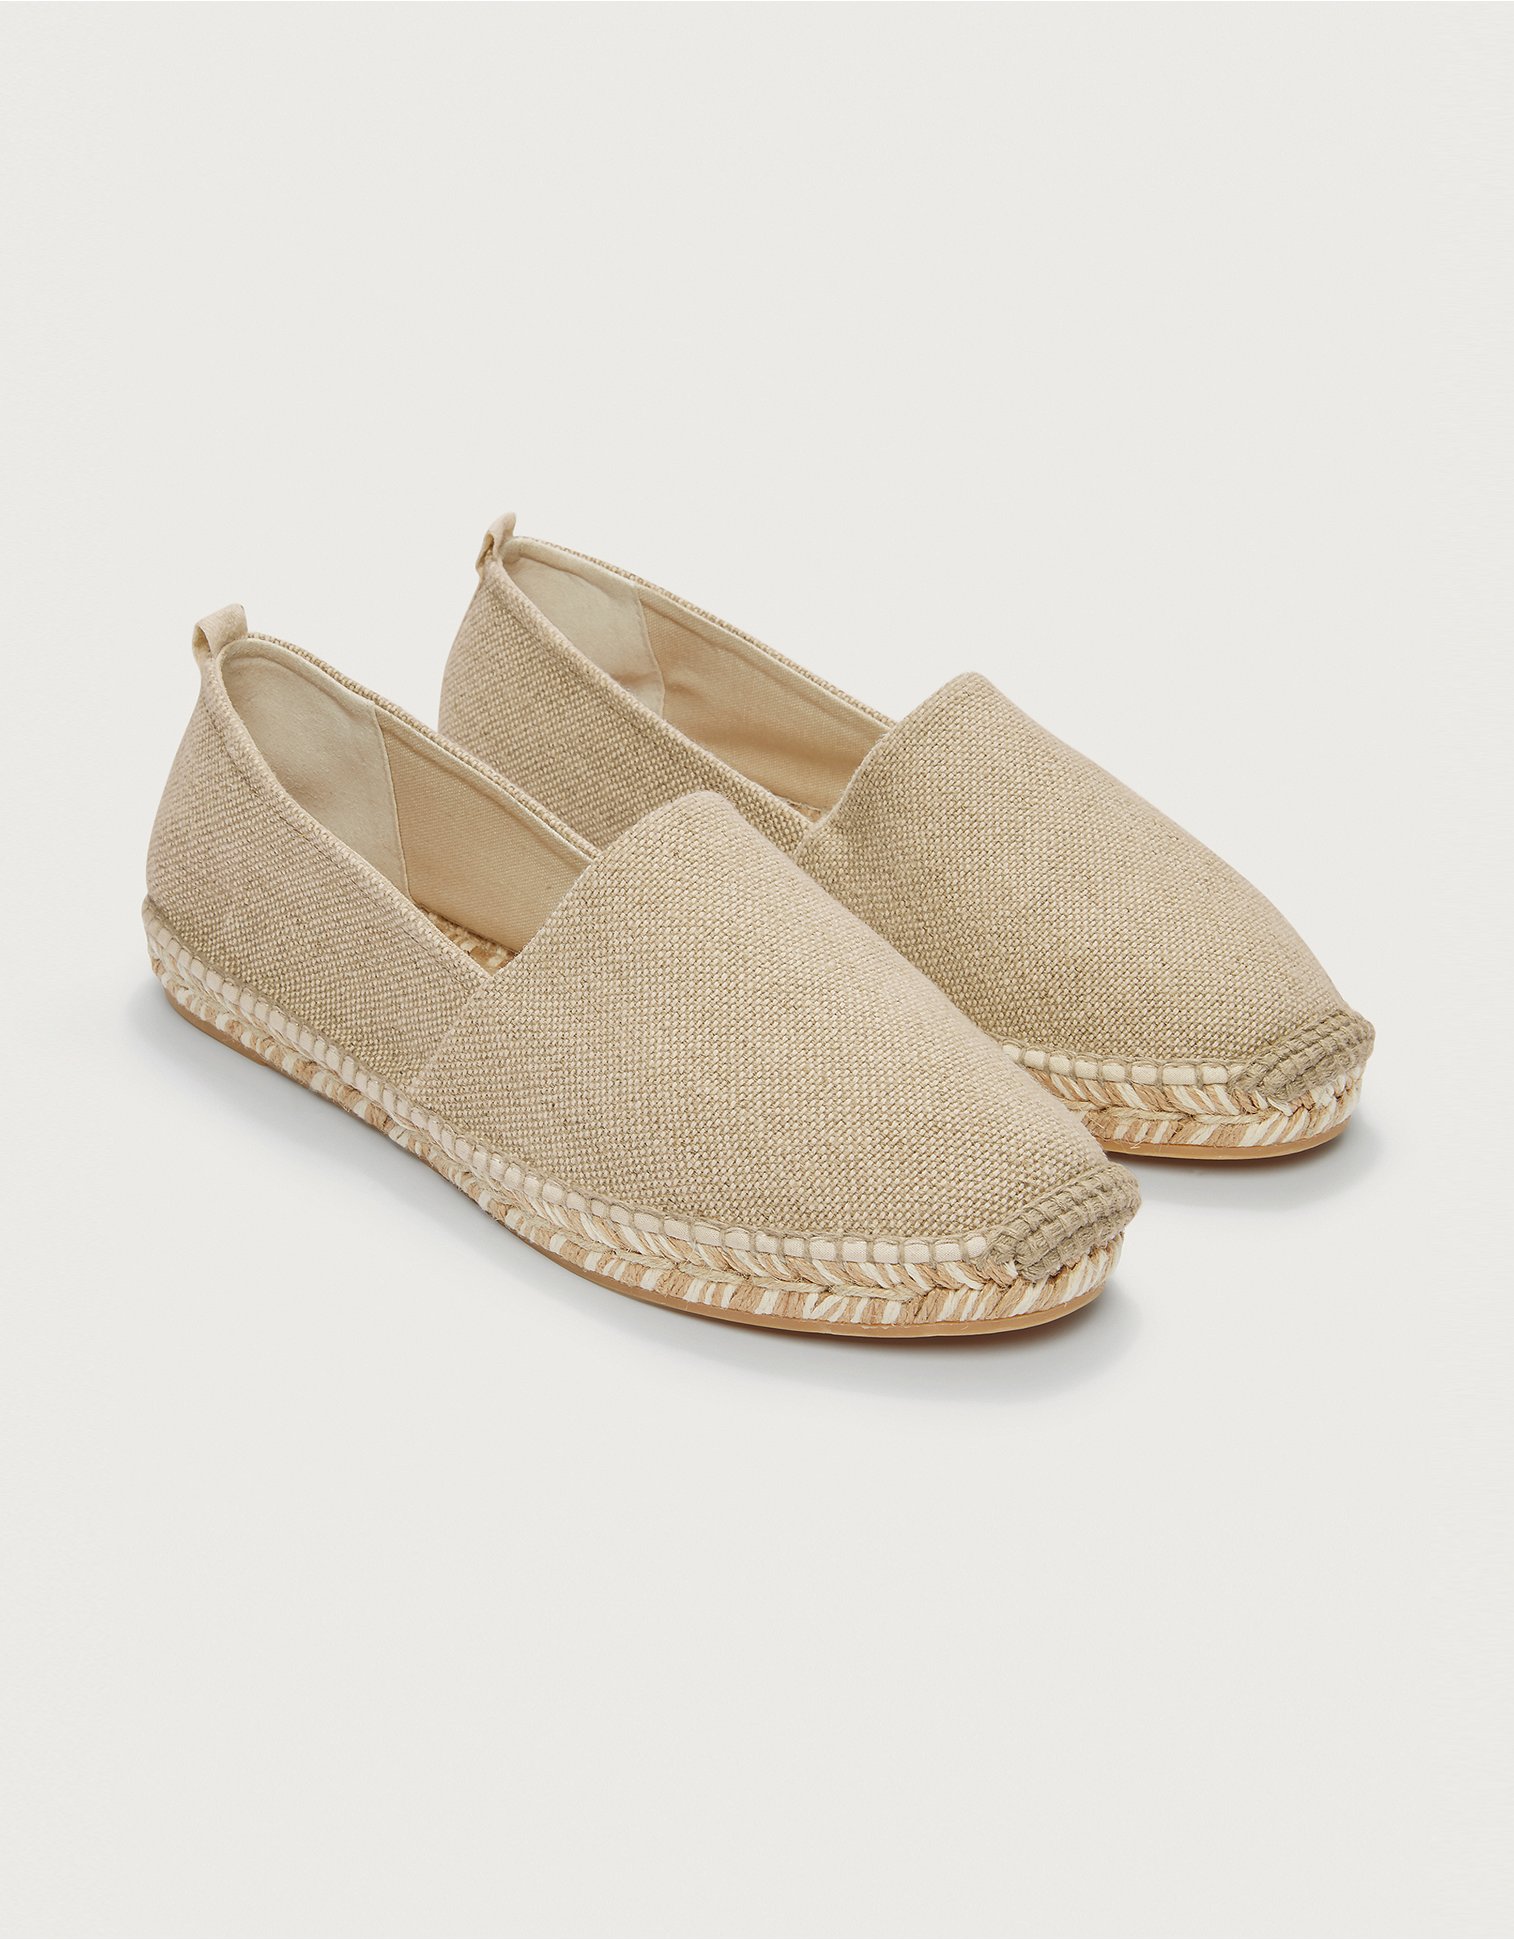 Ladies Espadrilles Sandals Canvas Flat Summer Slip On Cotton Shoes UK Sizes